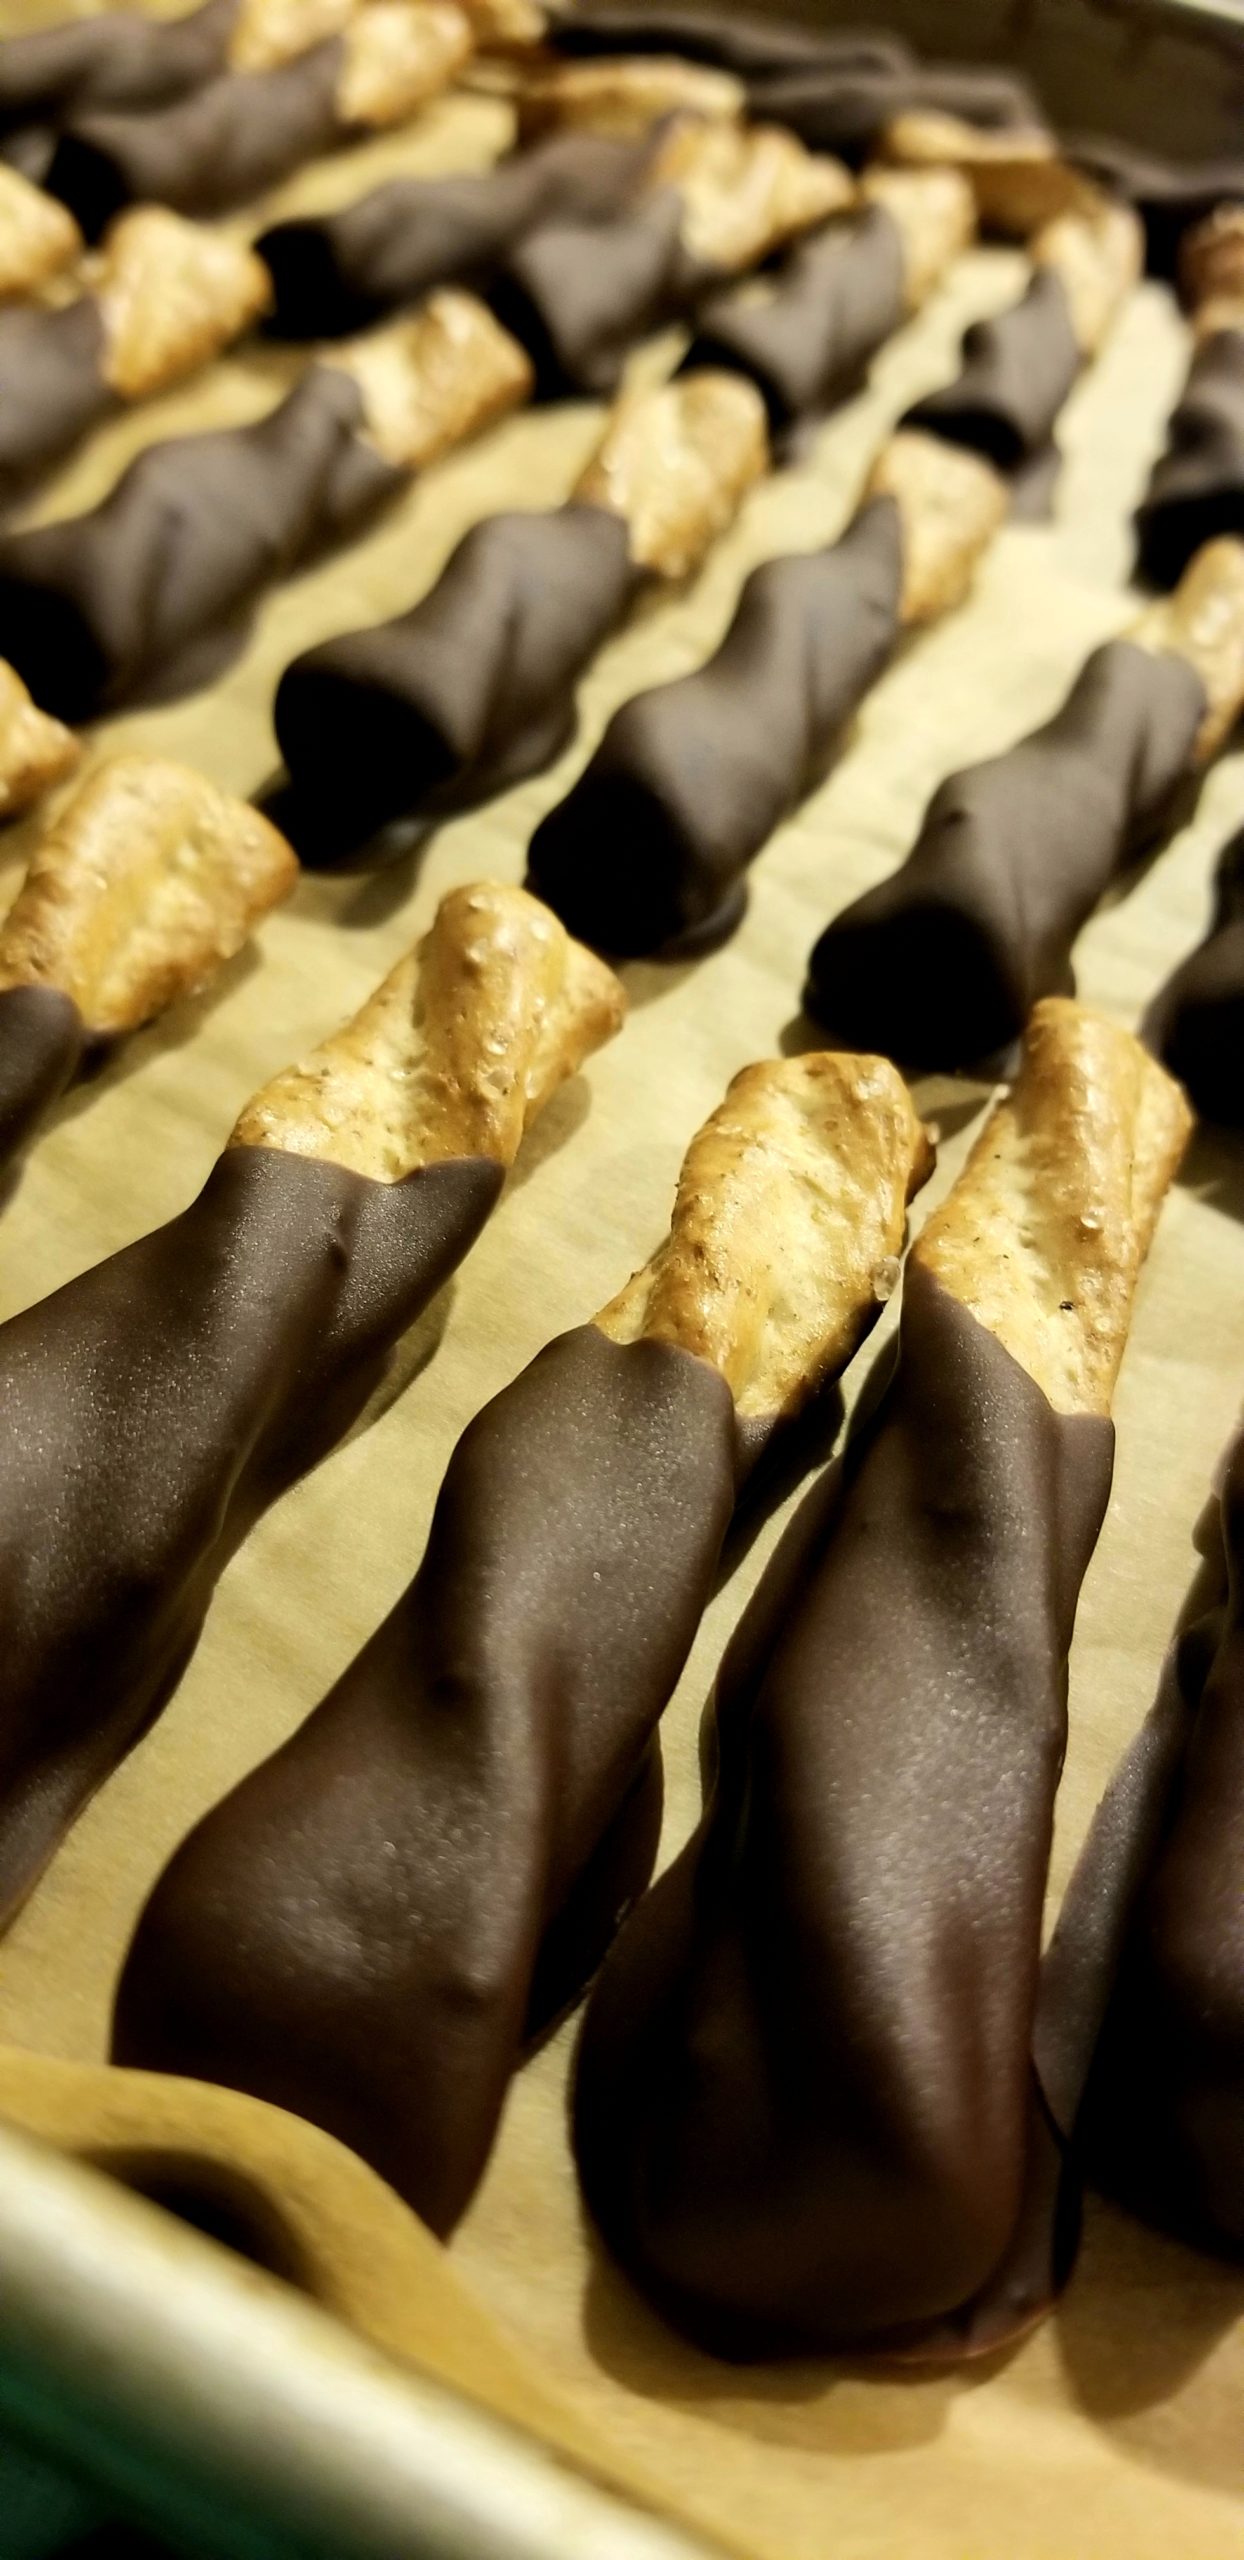 Jessica Craig's chocolate dipped pretzels.